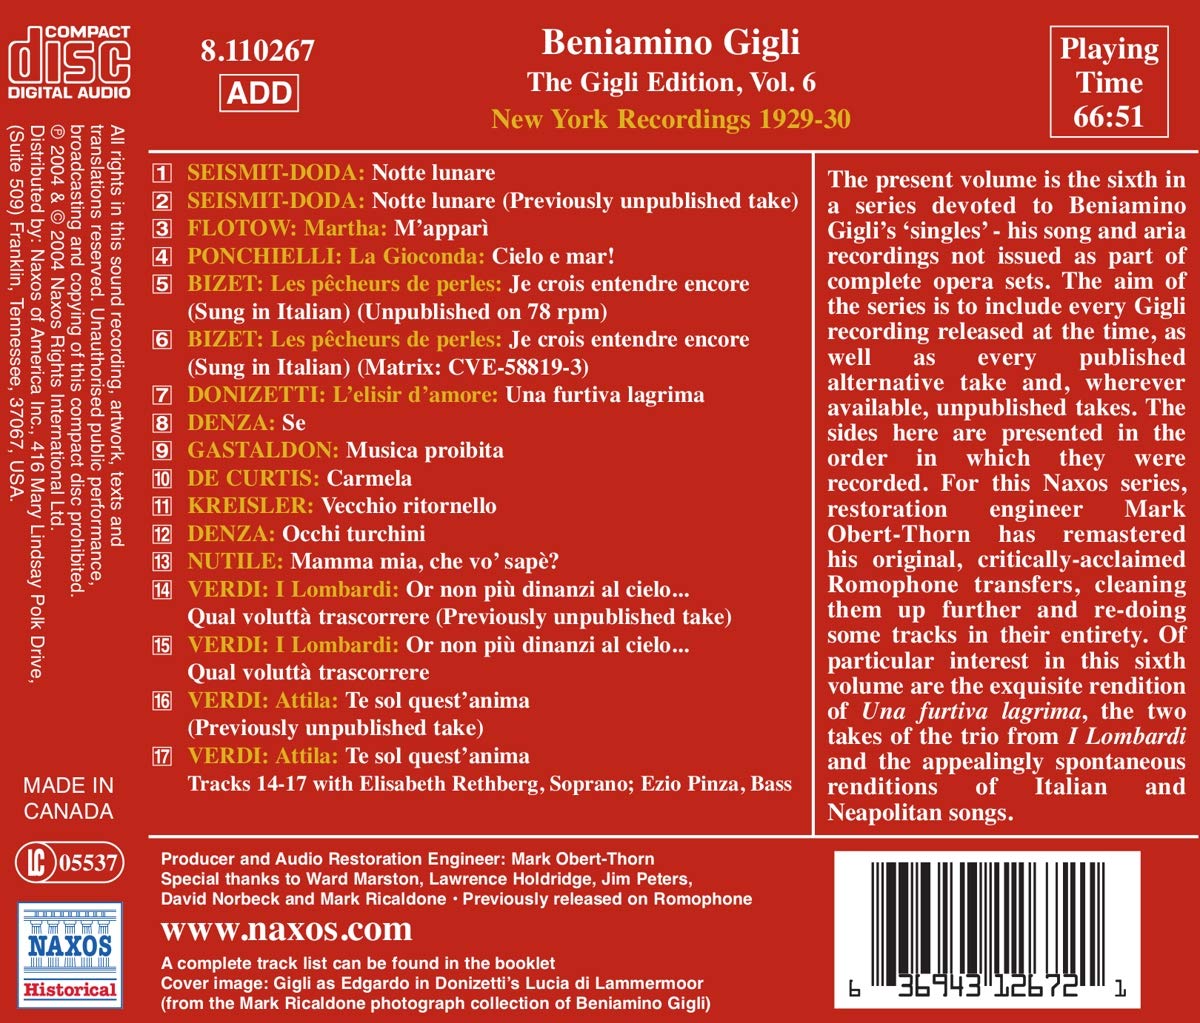 테너 베니아미노 질리 뉴욕 녹음 6집 (Beniamino Gigli - The New York Recordings Edition Vol. 6) 